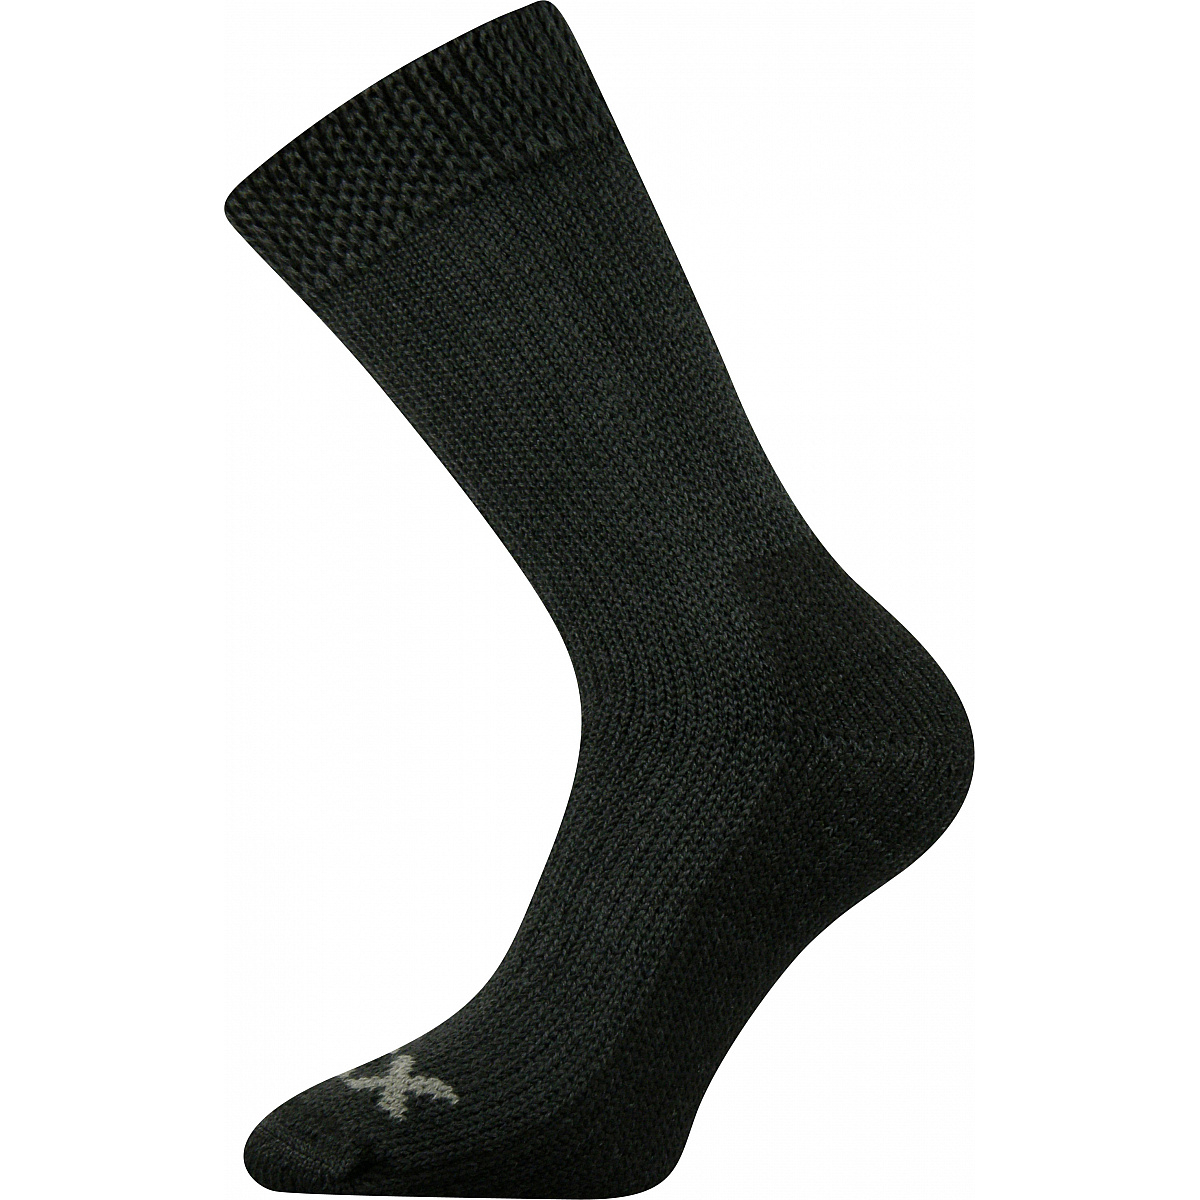 Extra teplé vlněné ponožky Voxx Alpin - tmavě šedé, 43-46